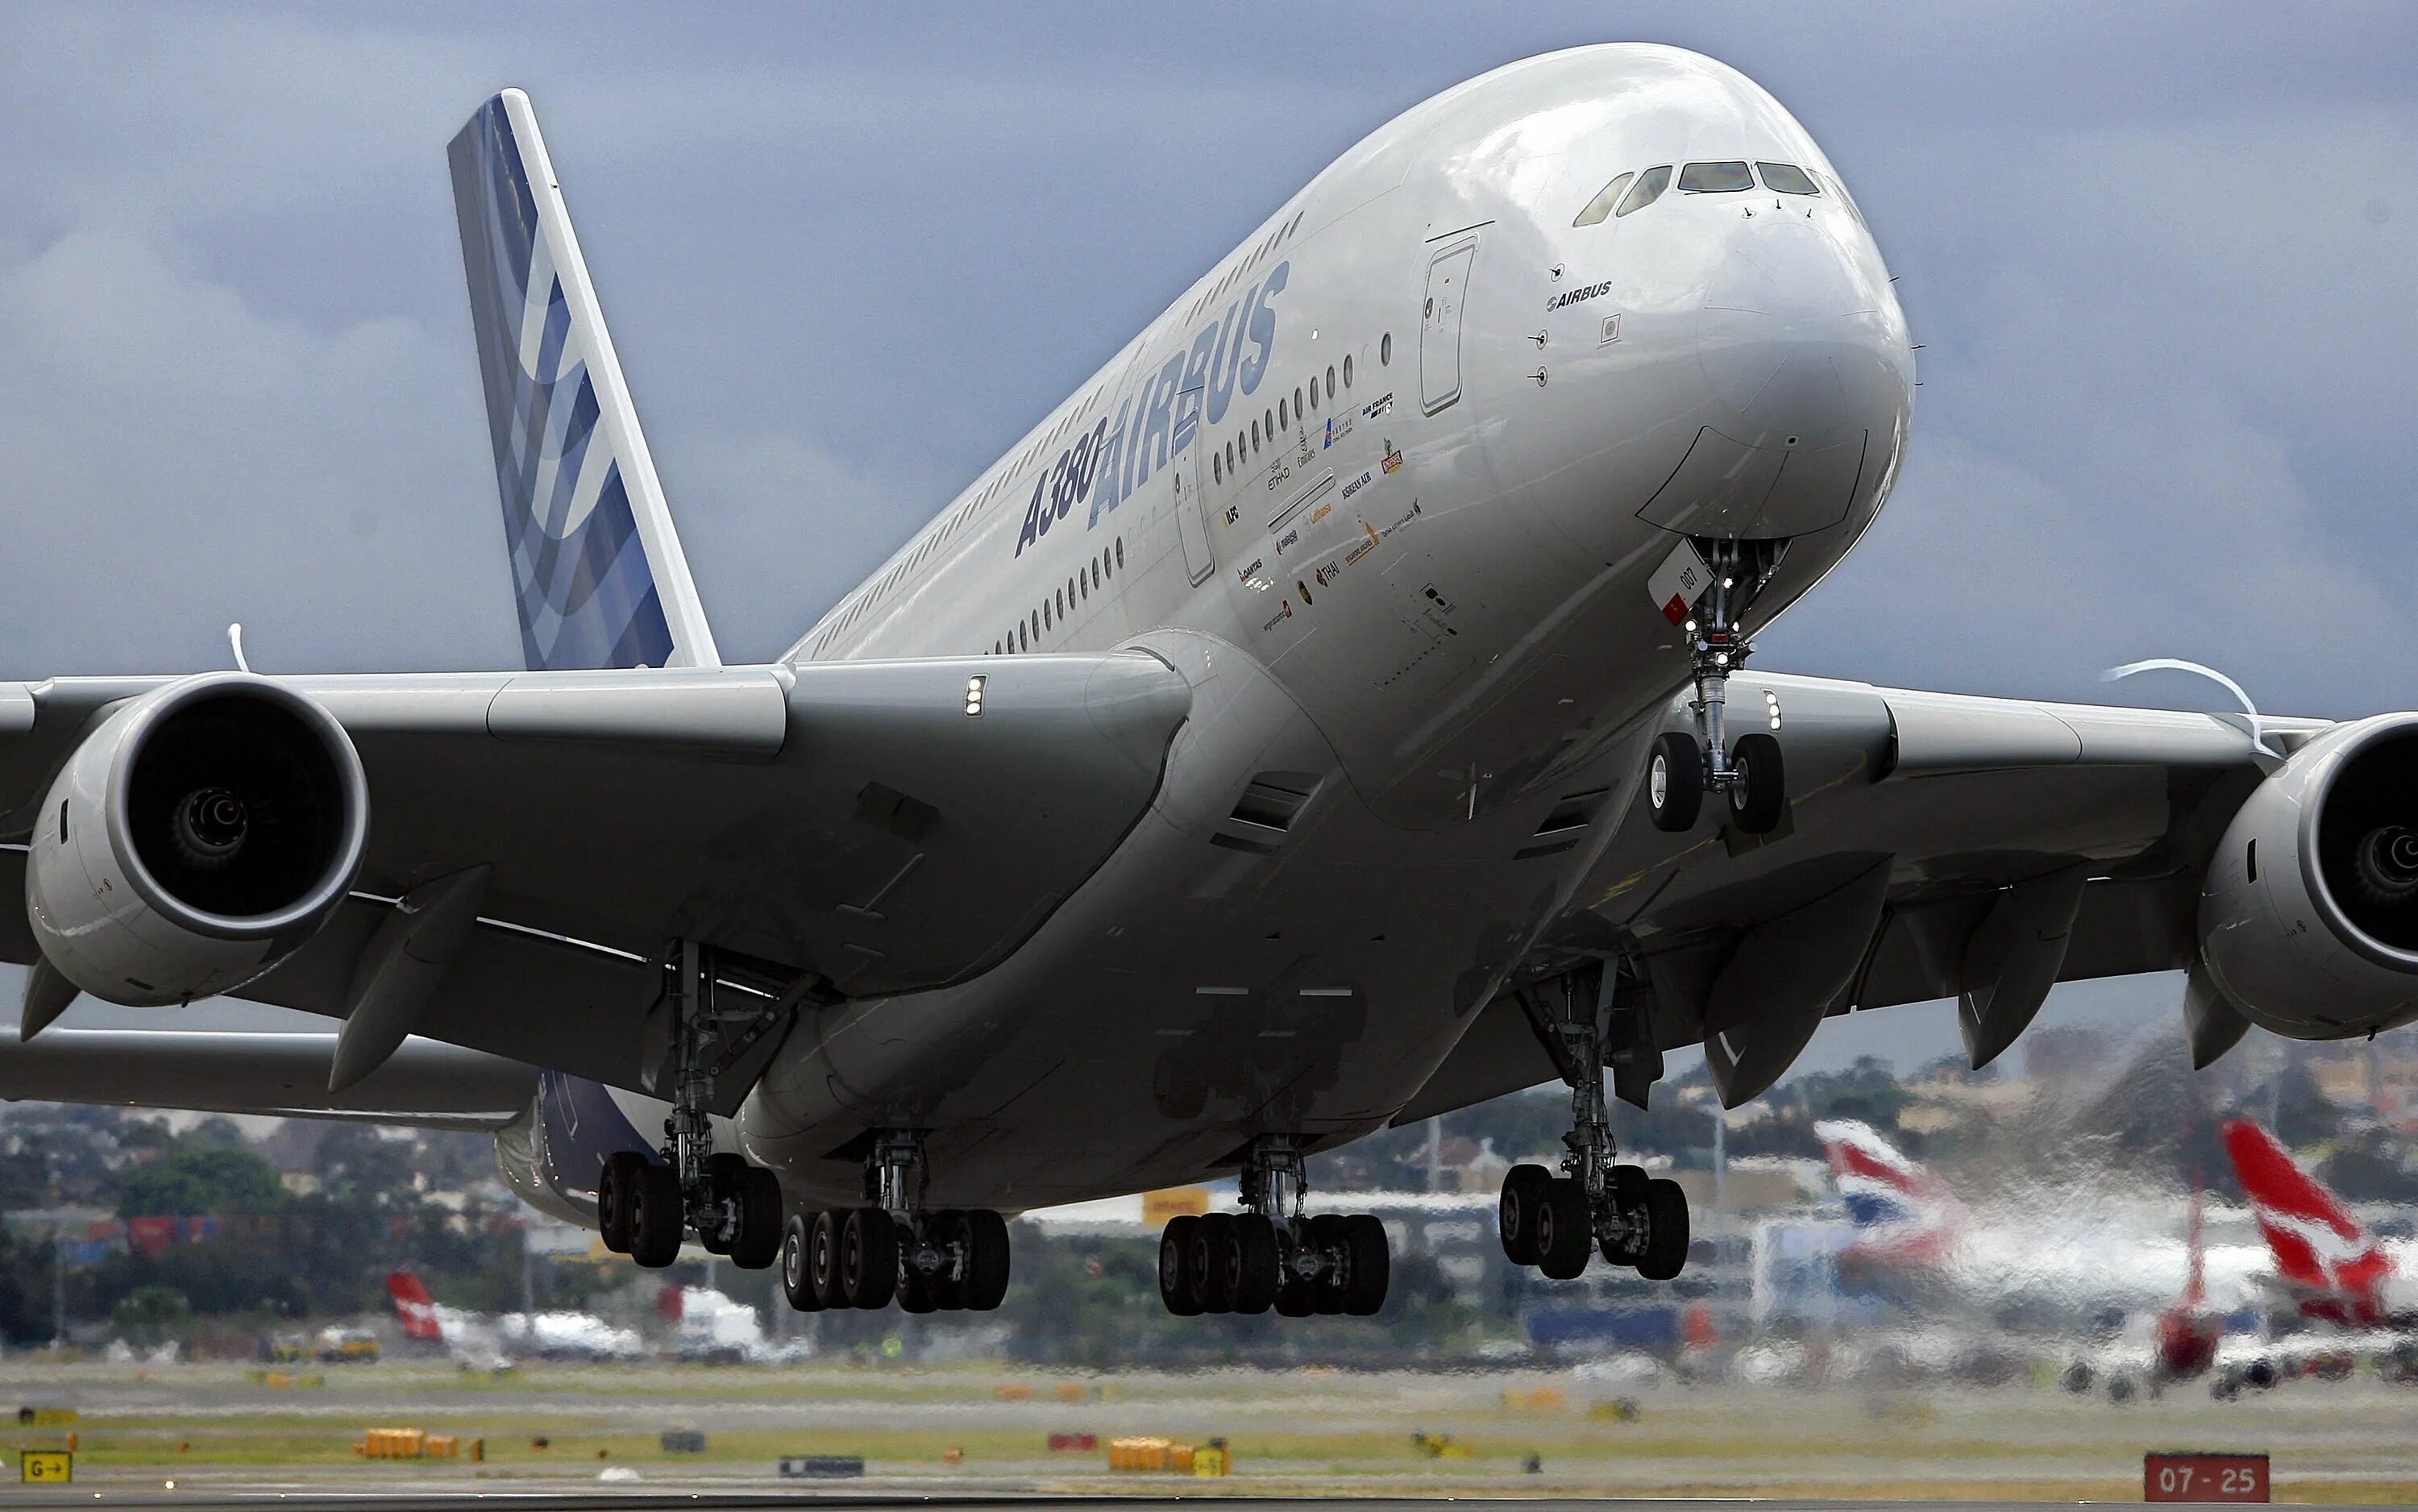 Самые большие пассажирские. Airbus a380 и человек. Airbus a380 SUPERJUMBO. Самый большой пассажирский лайнер в мире - Аэробус а380. Самый большой самолёт Airbus a390.